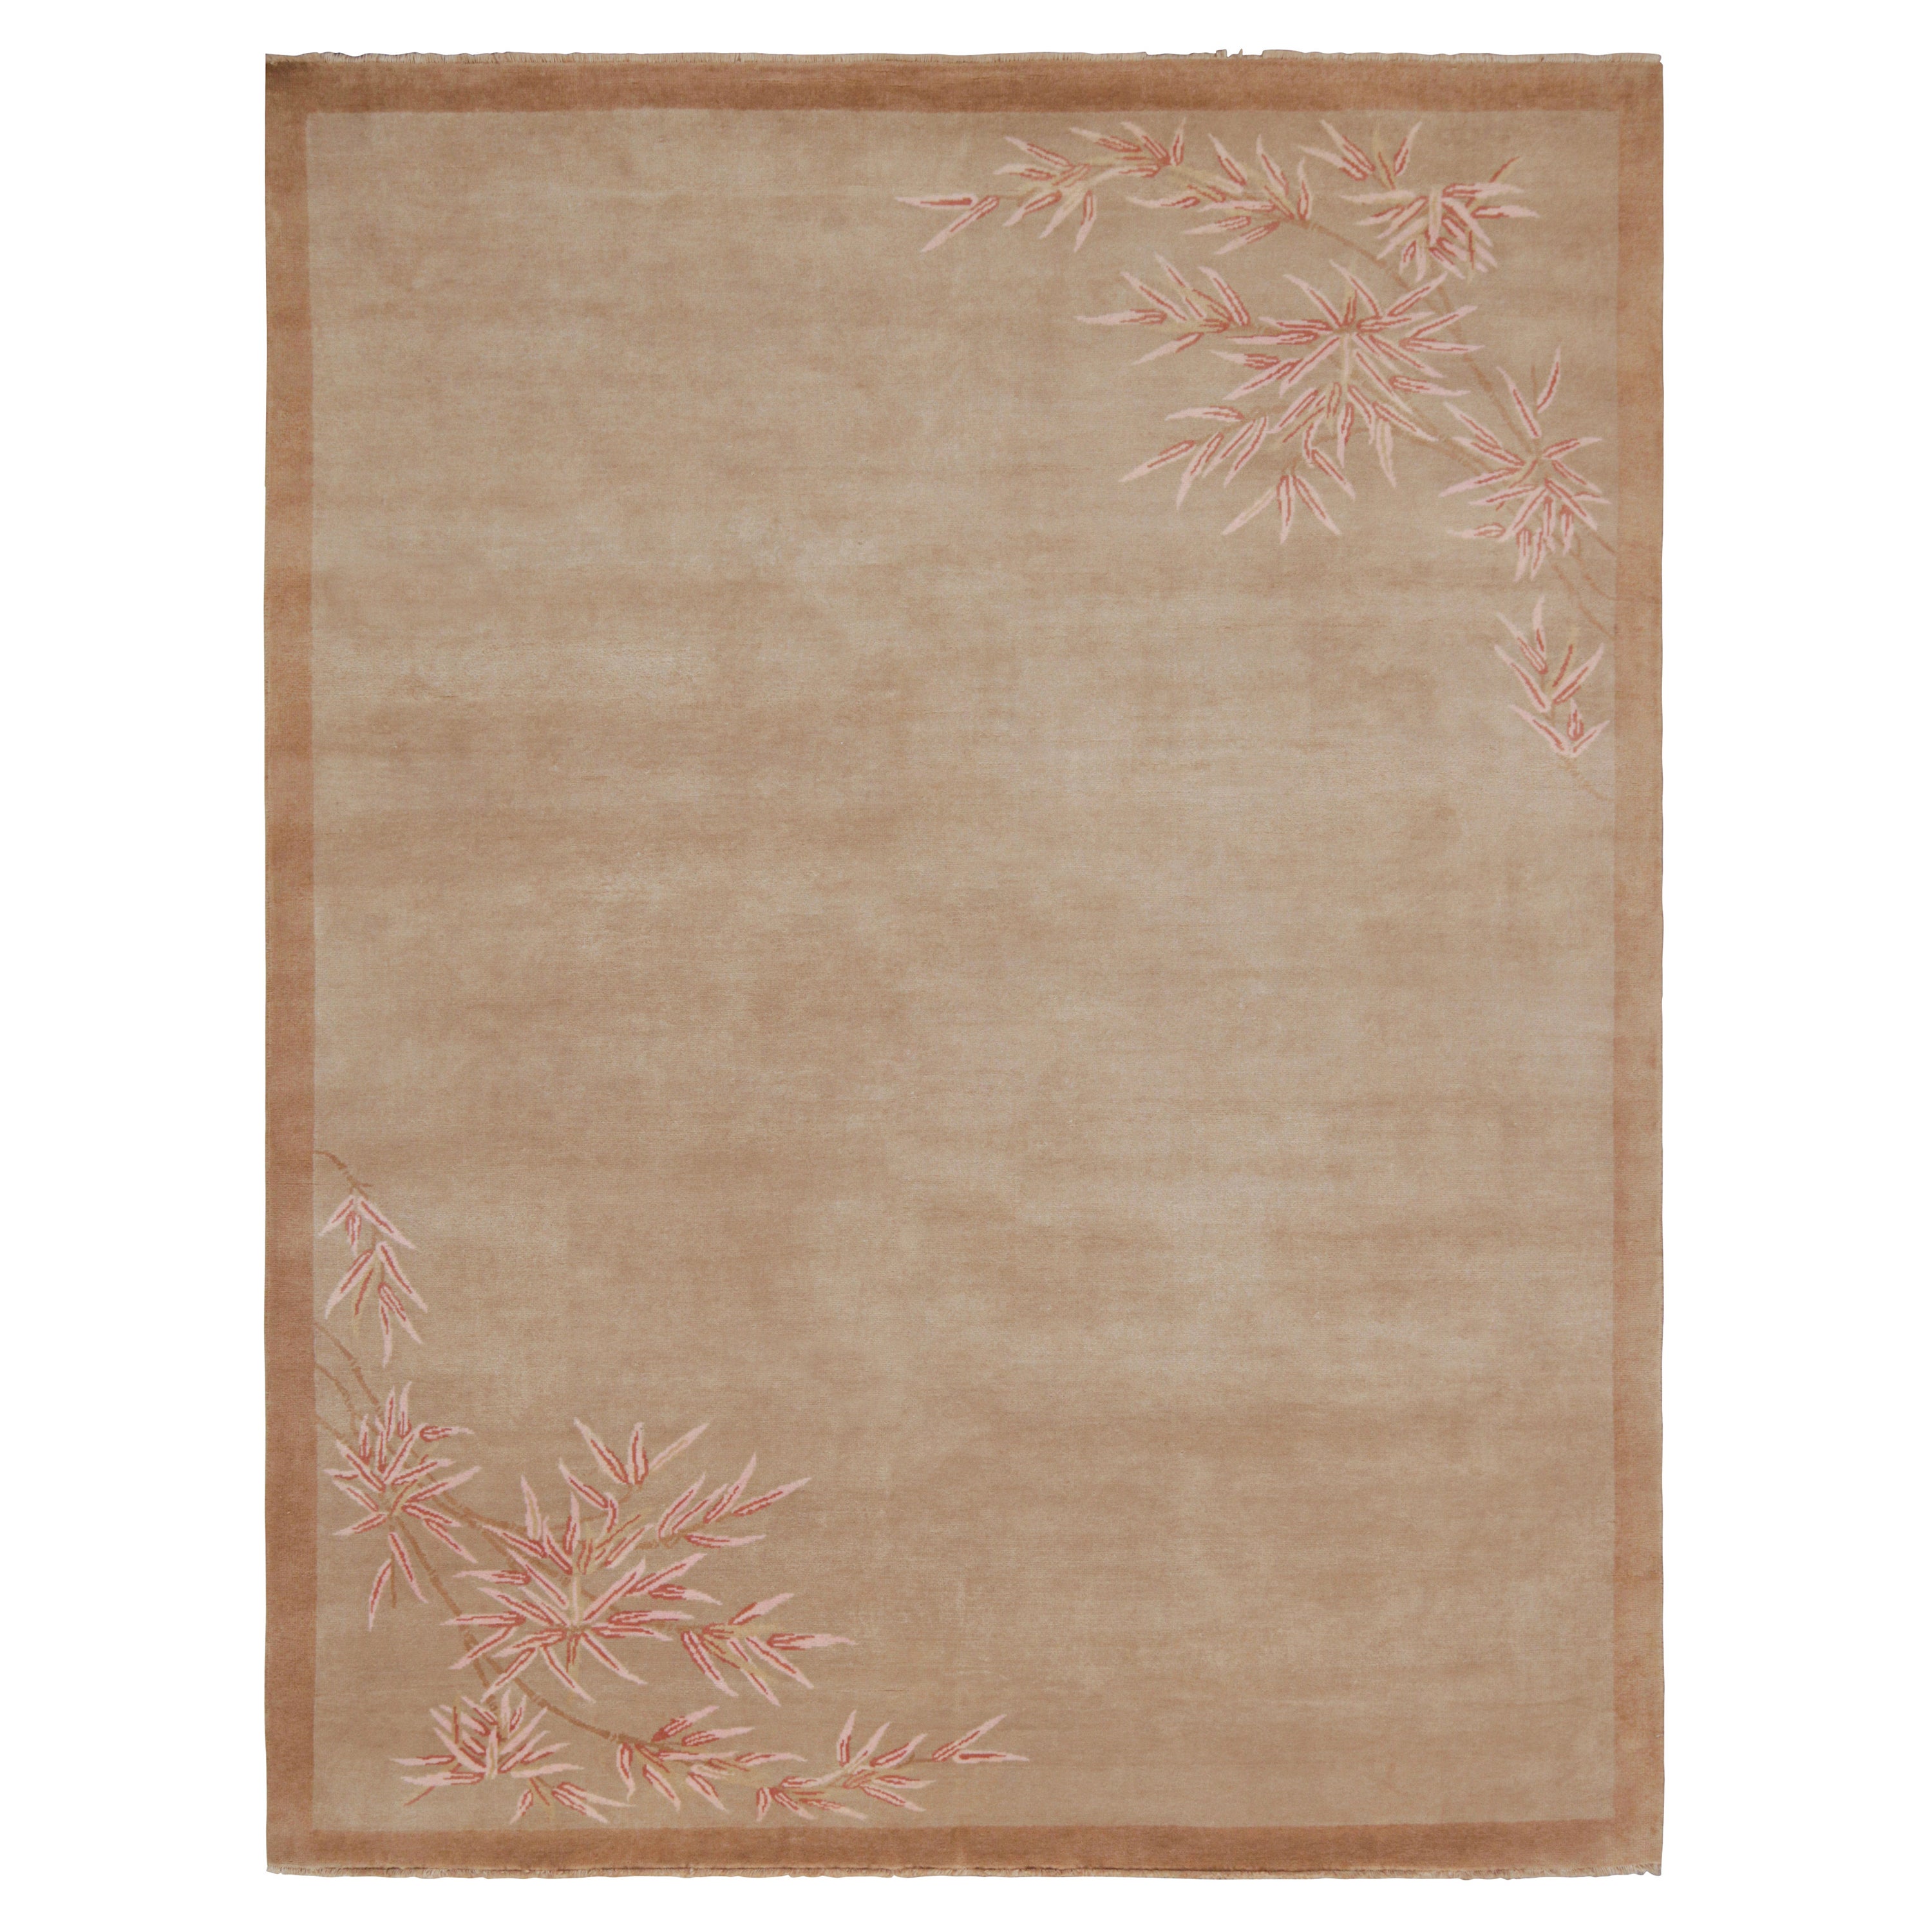 Rug & Kilim's Chinese Style Art Deco Rug in Tones of Brown with Floral Patterns (tapis de style chinois Art déco dans les tons de Brown avec des motifs floraux)